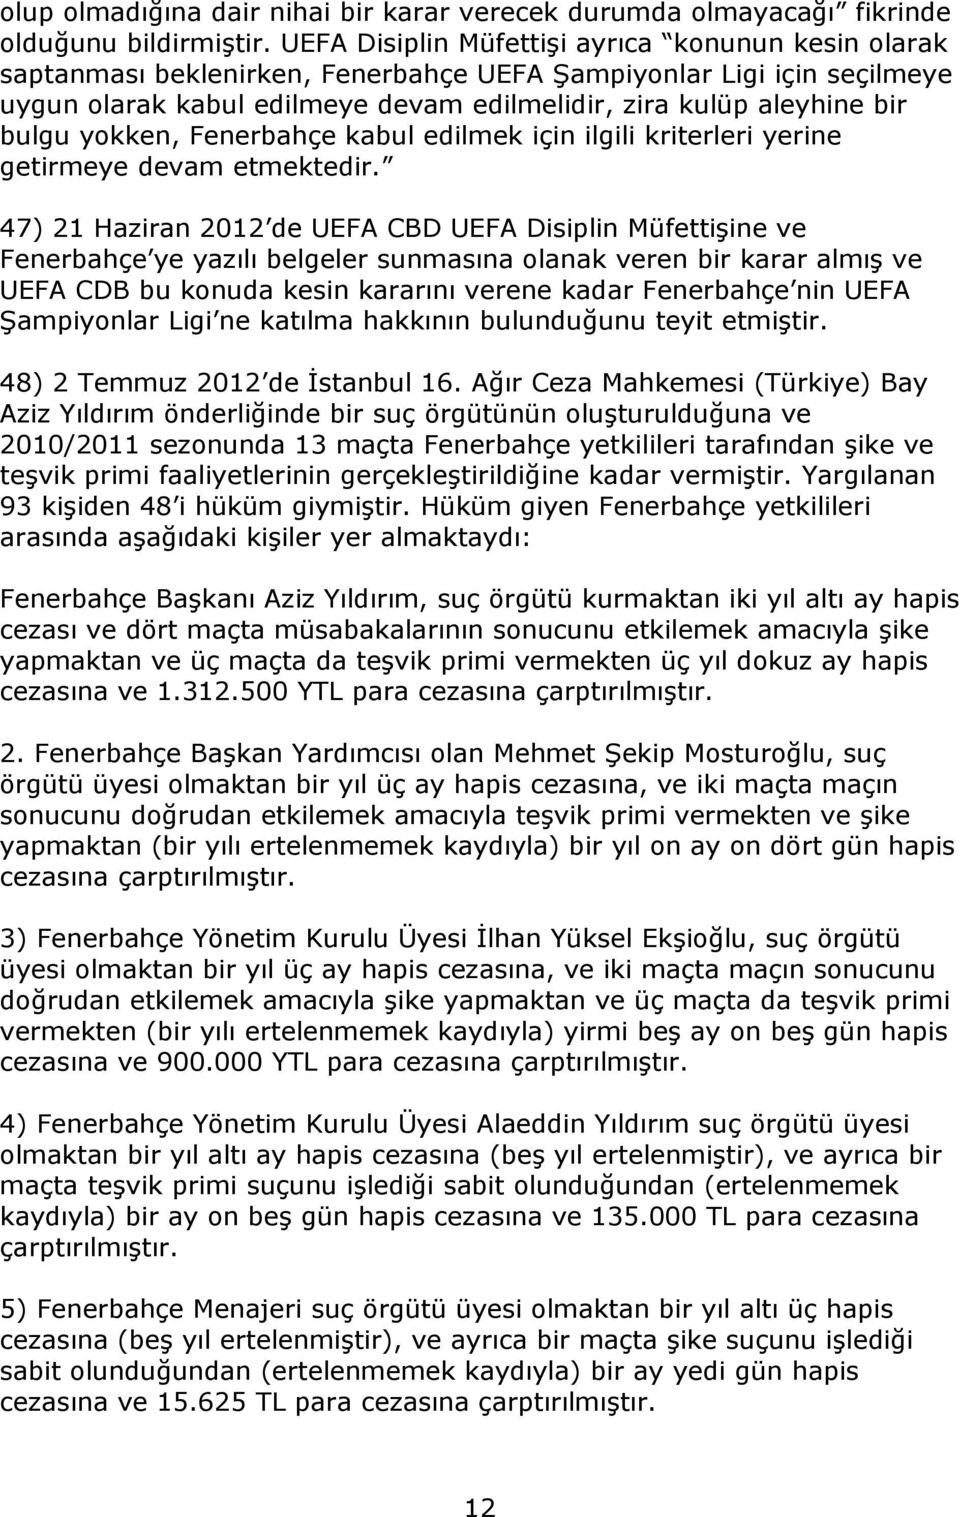 bulgu yokken, Fenerbahçe kabul edilmek için ilgili kriterleri yerine getirmeye devam etmektedir.